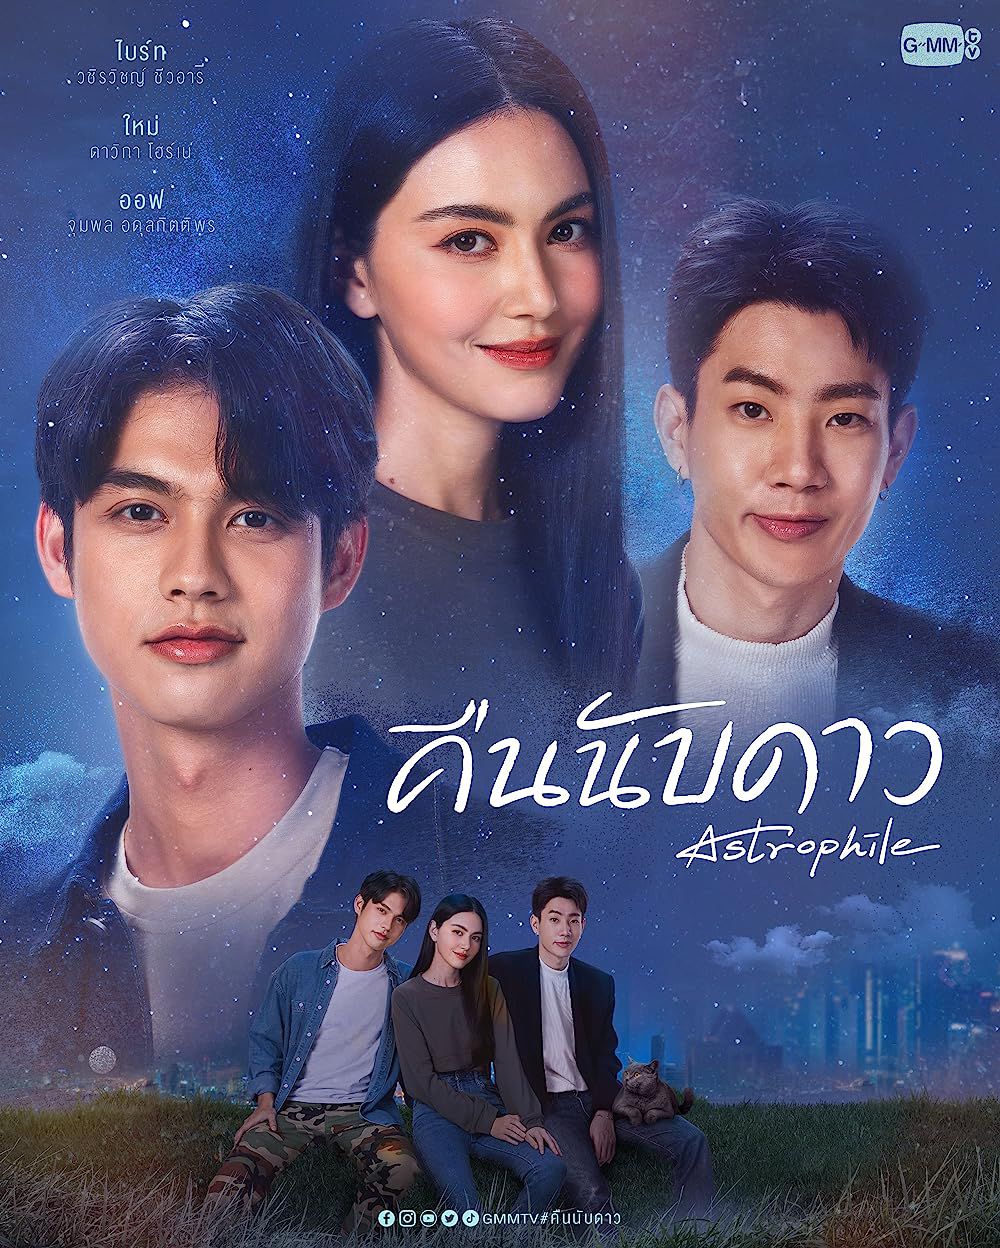 5 Rekomendasi Drama Romantis Thailand yang Bisa Buat Kamu Baper!